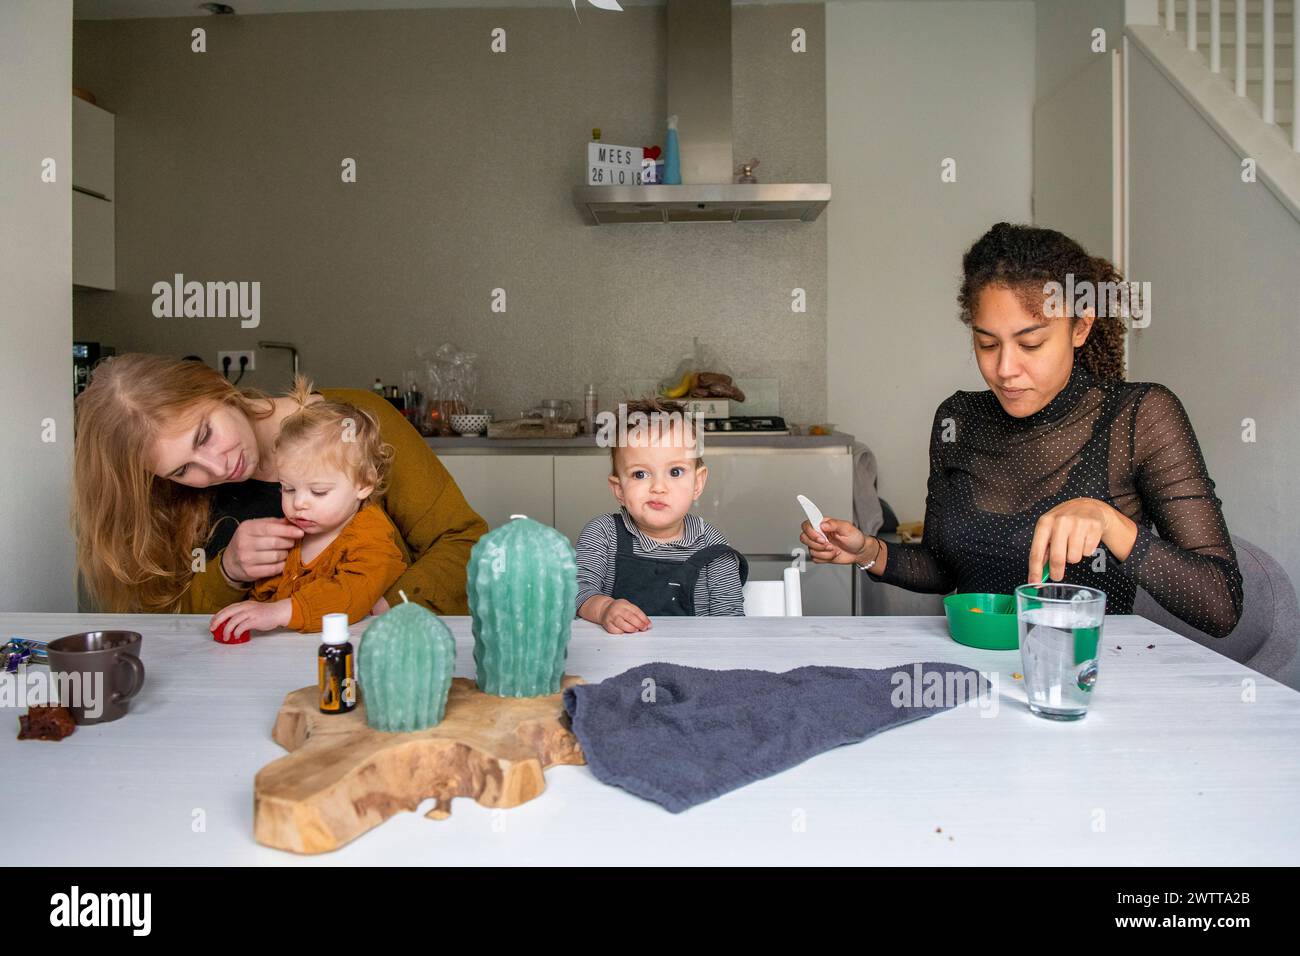 Familienzeit am Küchentisch mit Snacks und Aktivitäten. Stockfoto